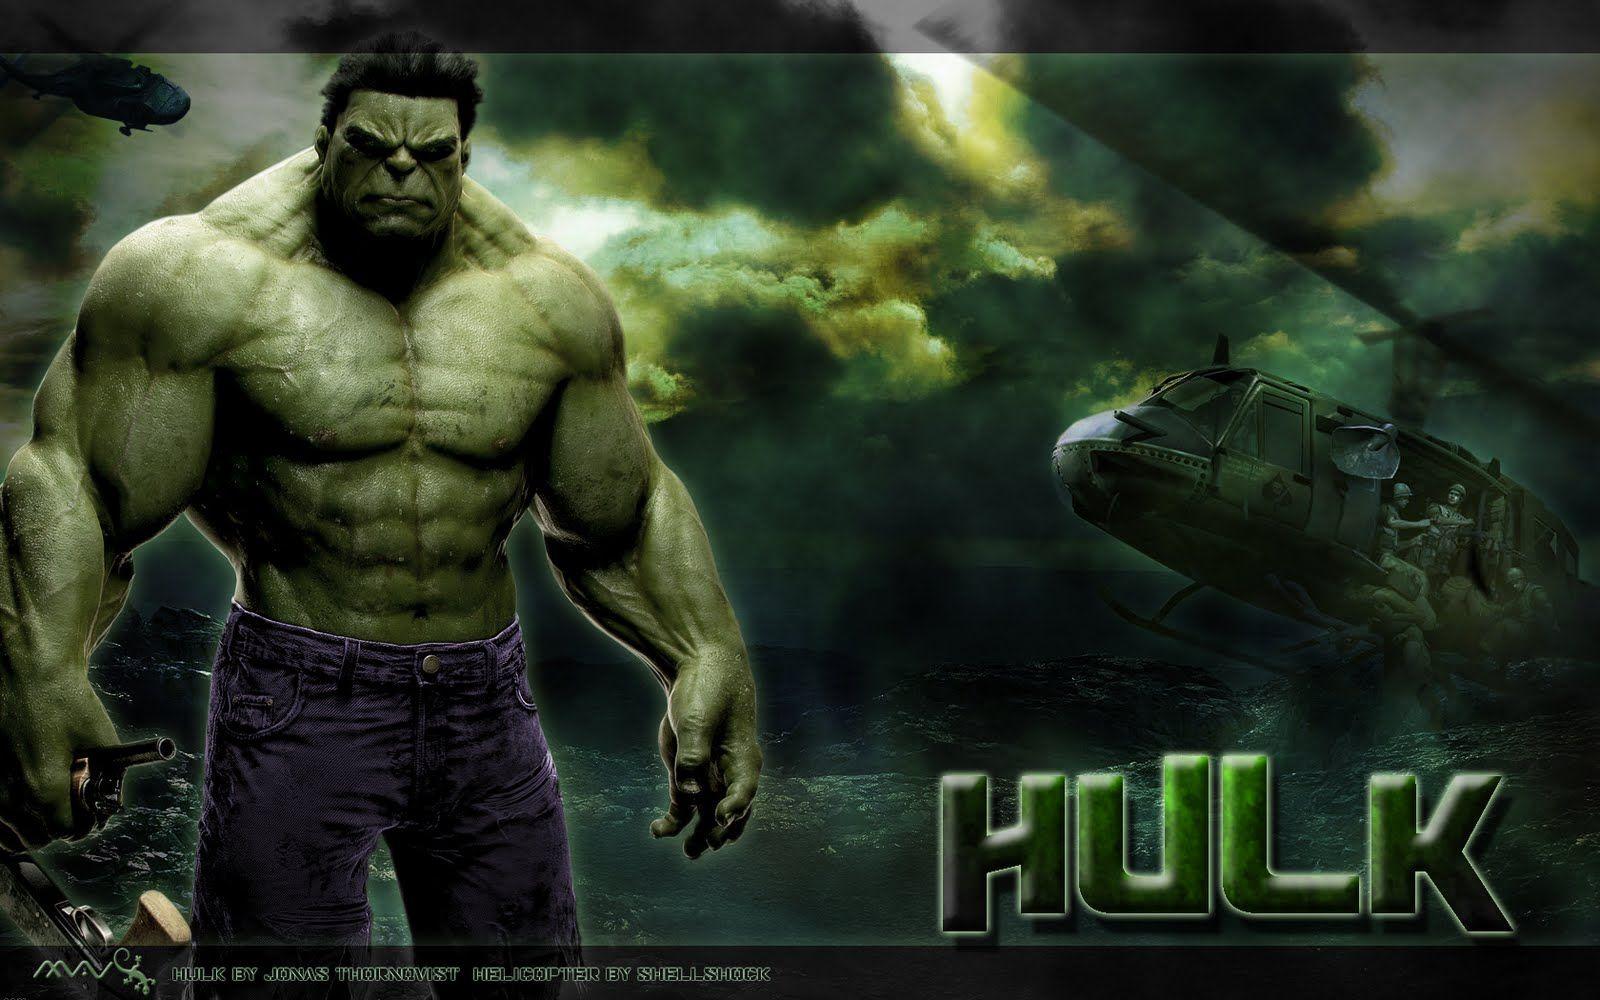 Colleccion Wallpaper e imagenes Hulk!